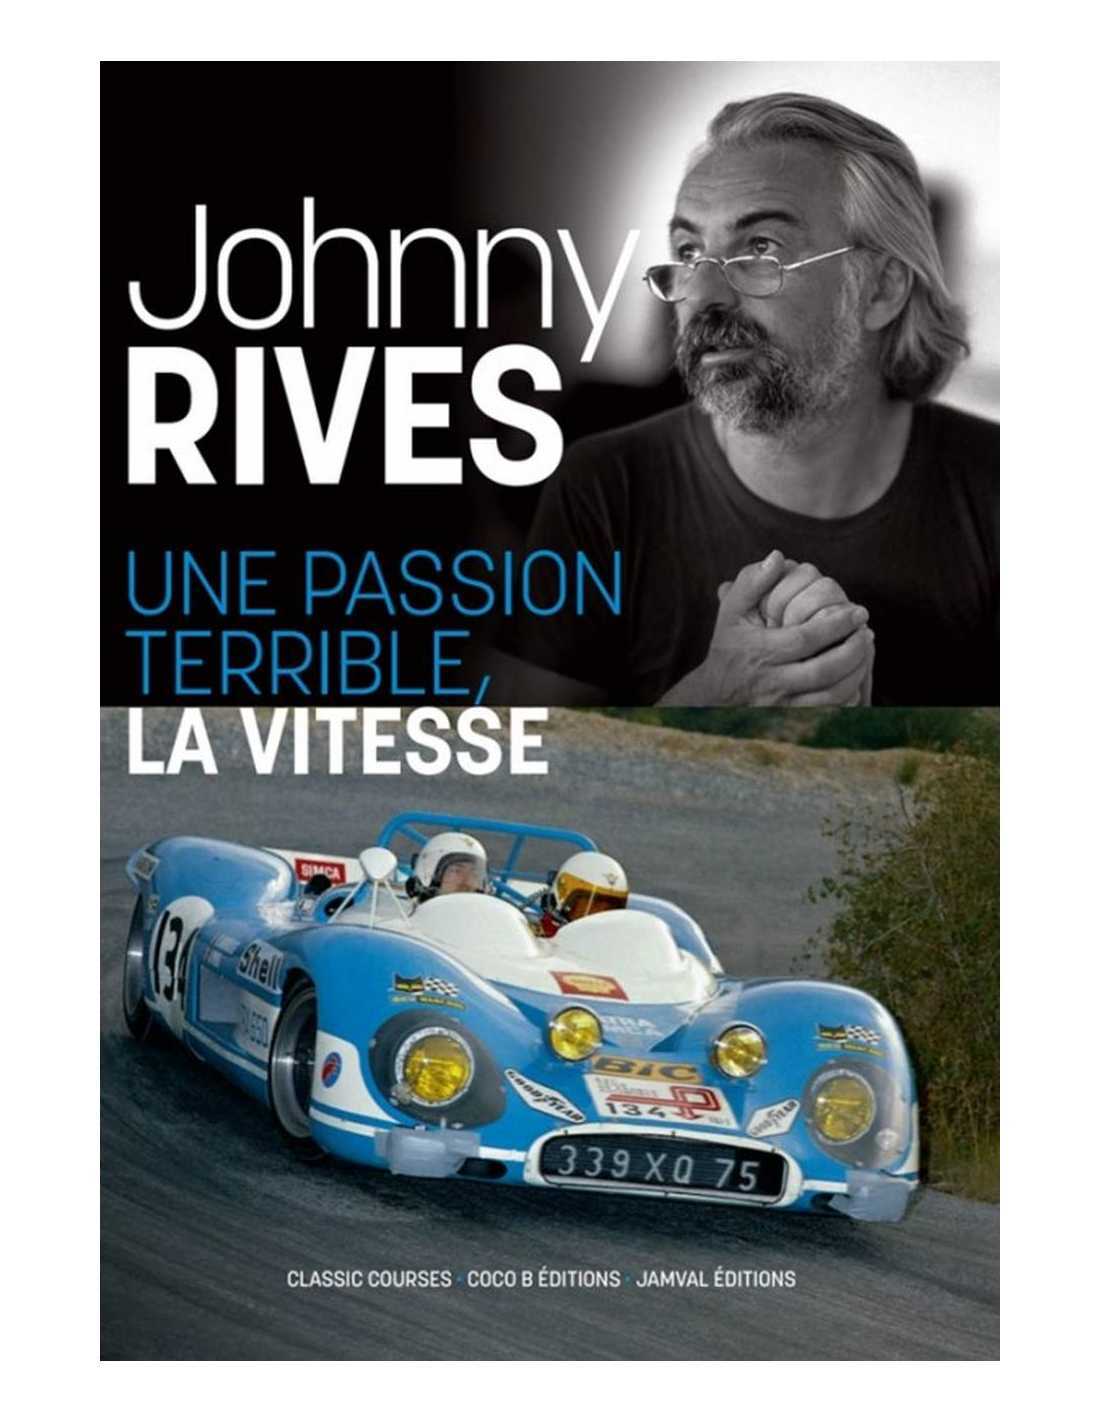 Kniha JOHNNY RIVES UNE PASSION TERRIBLE, LA VITESSE RIVES